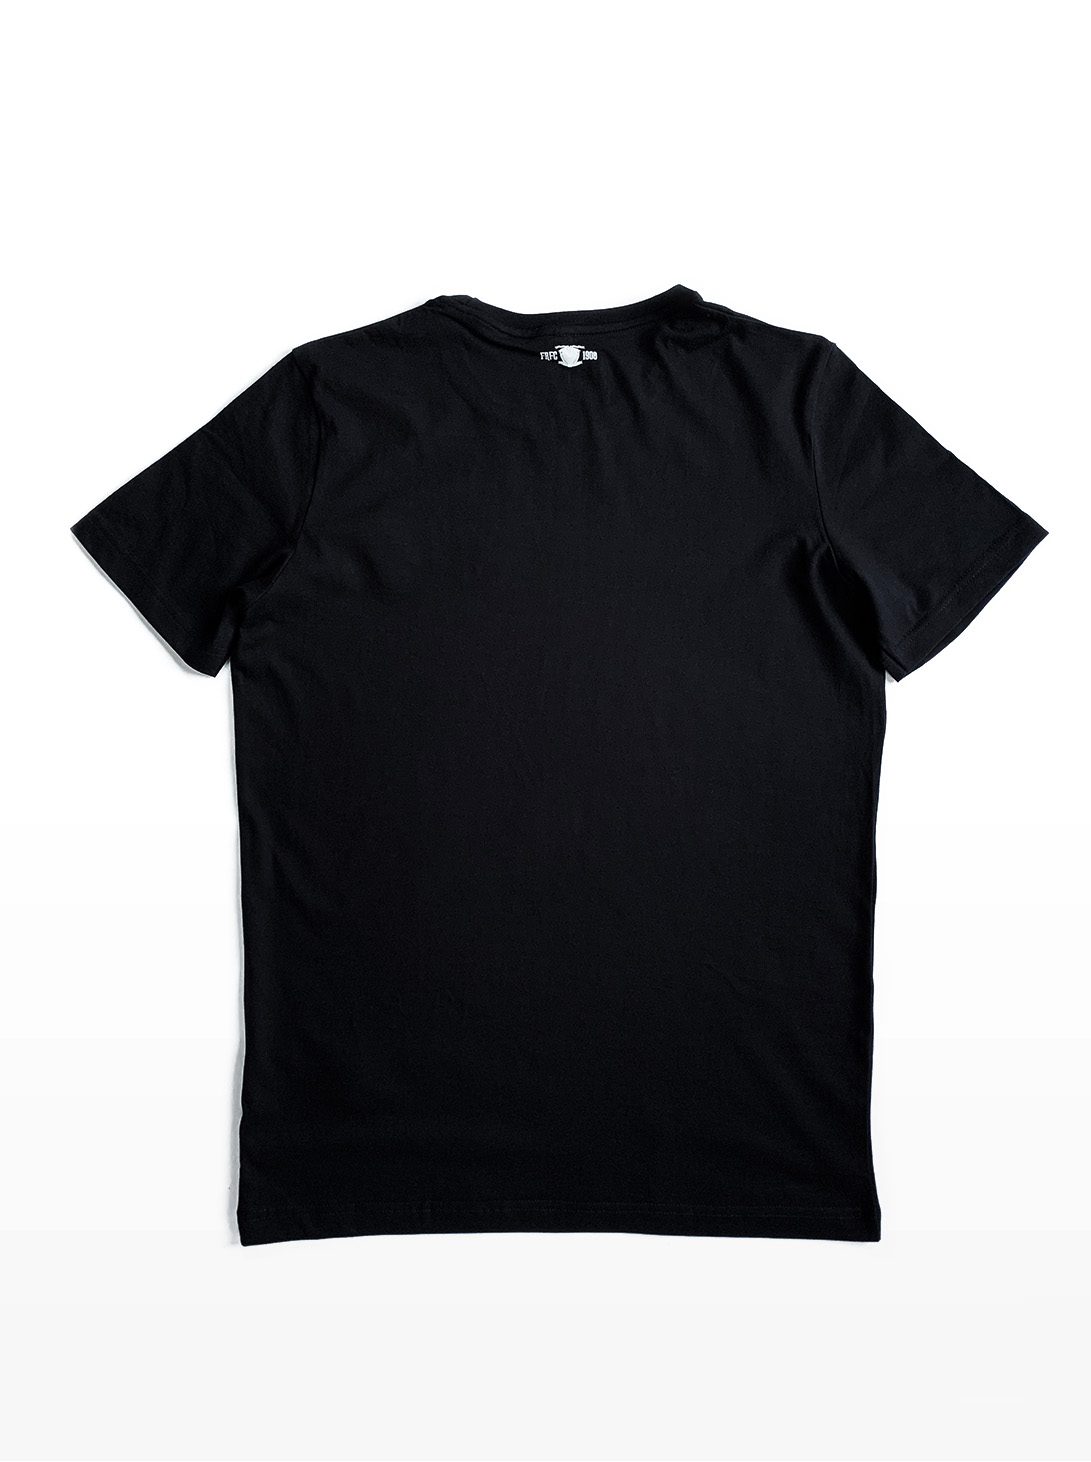 FRFC1908 T-Shirt Zwart (Achterkant)